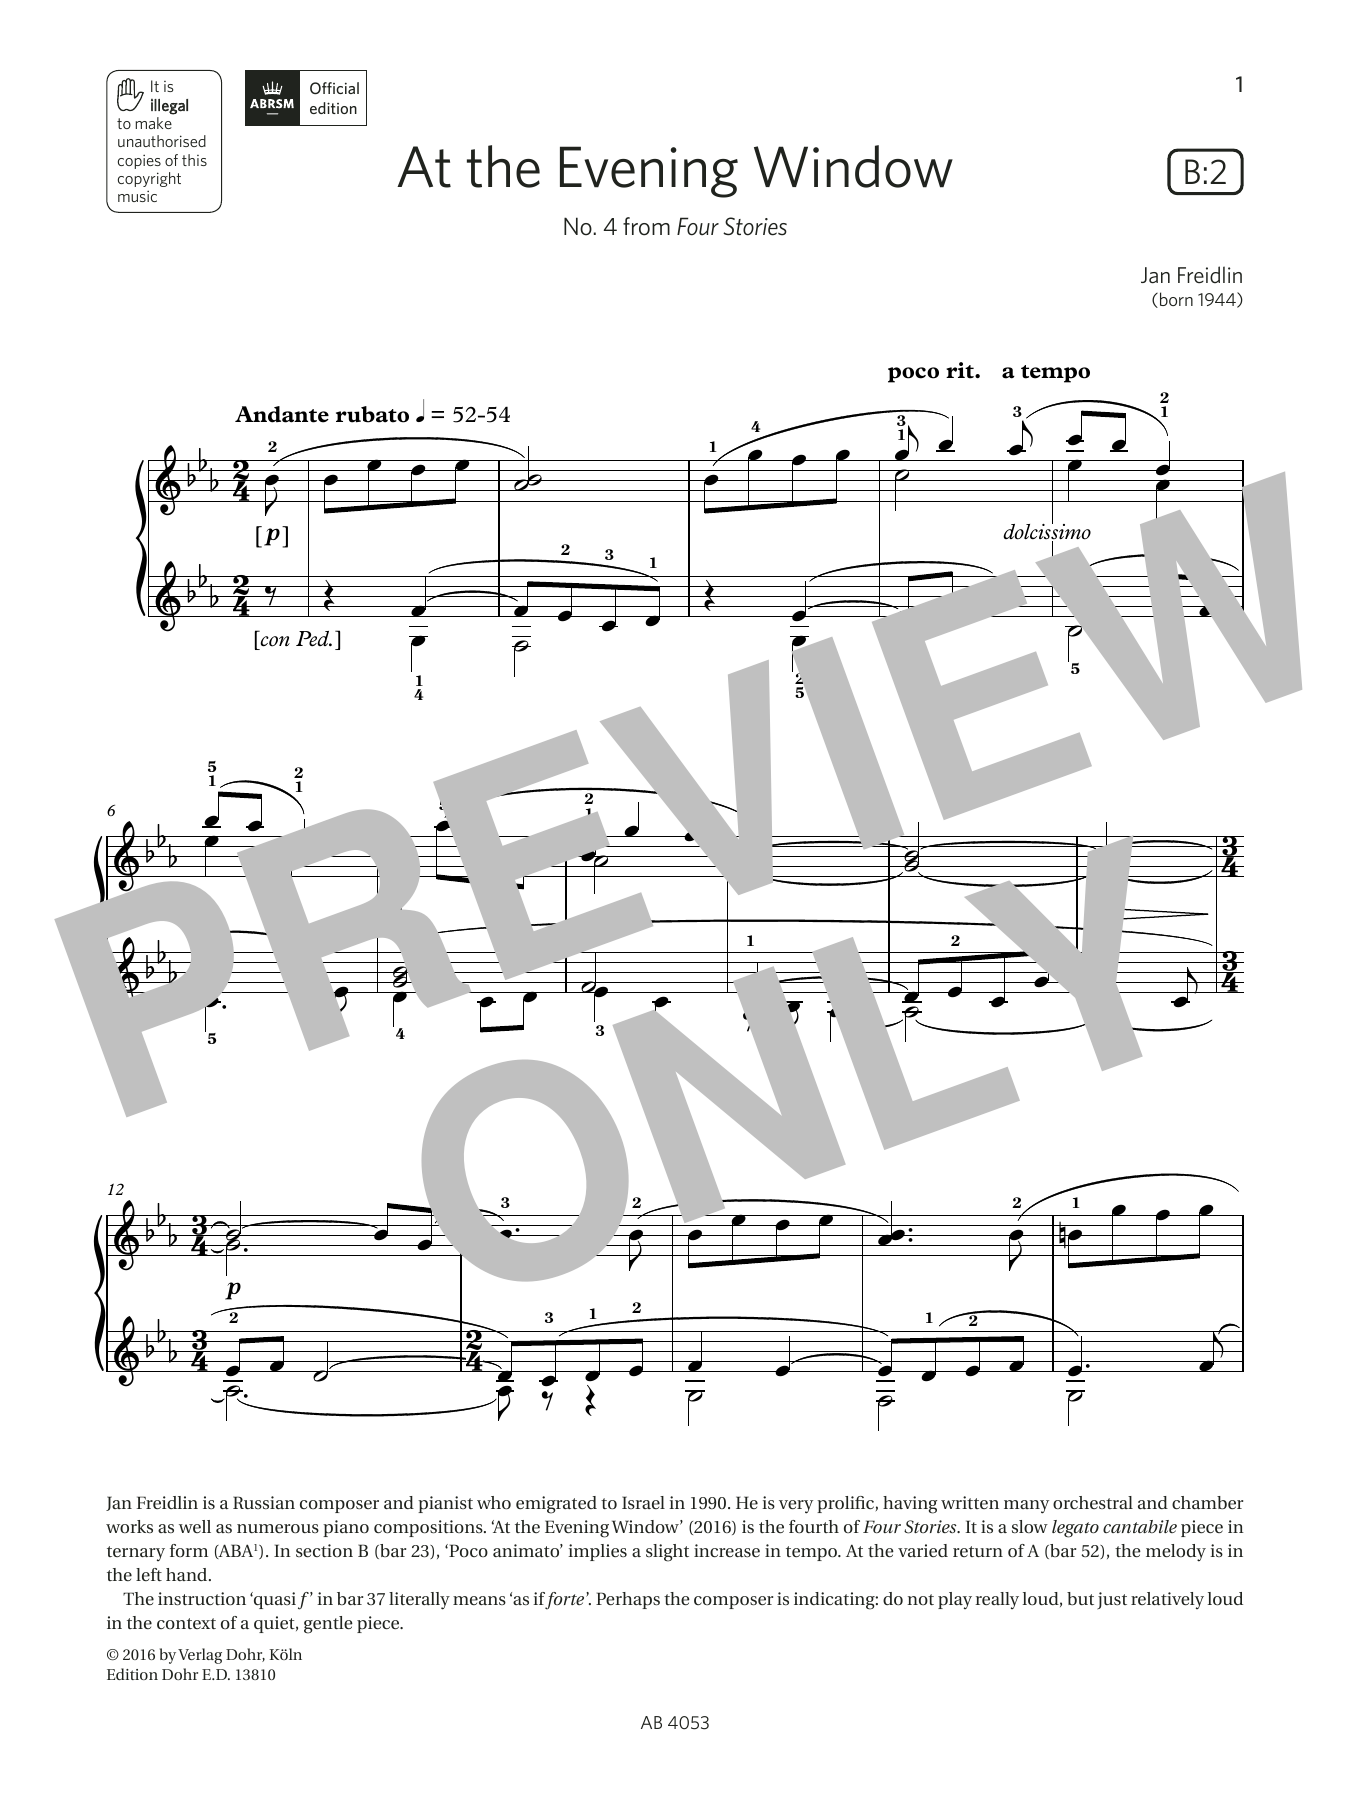 Download Jan Freidlin At the Evening Window (Grade 7, list B2 Sheet Music